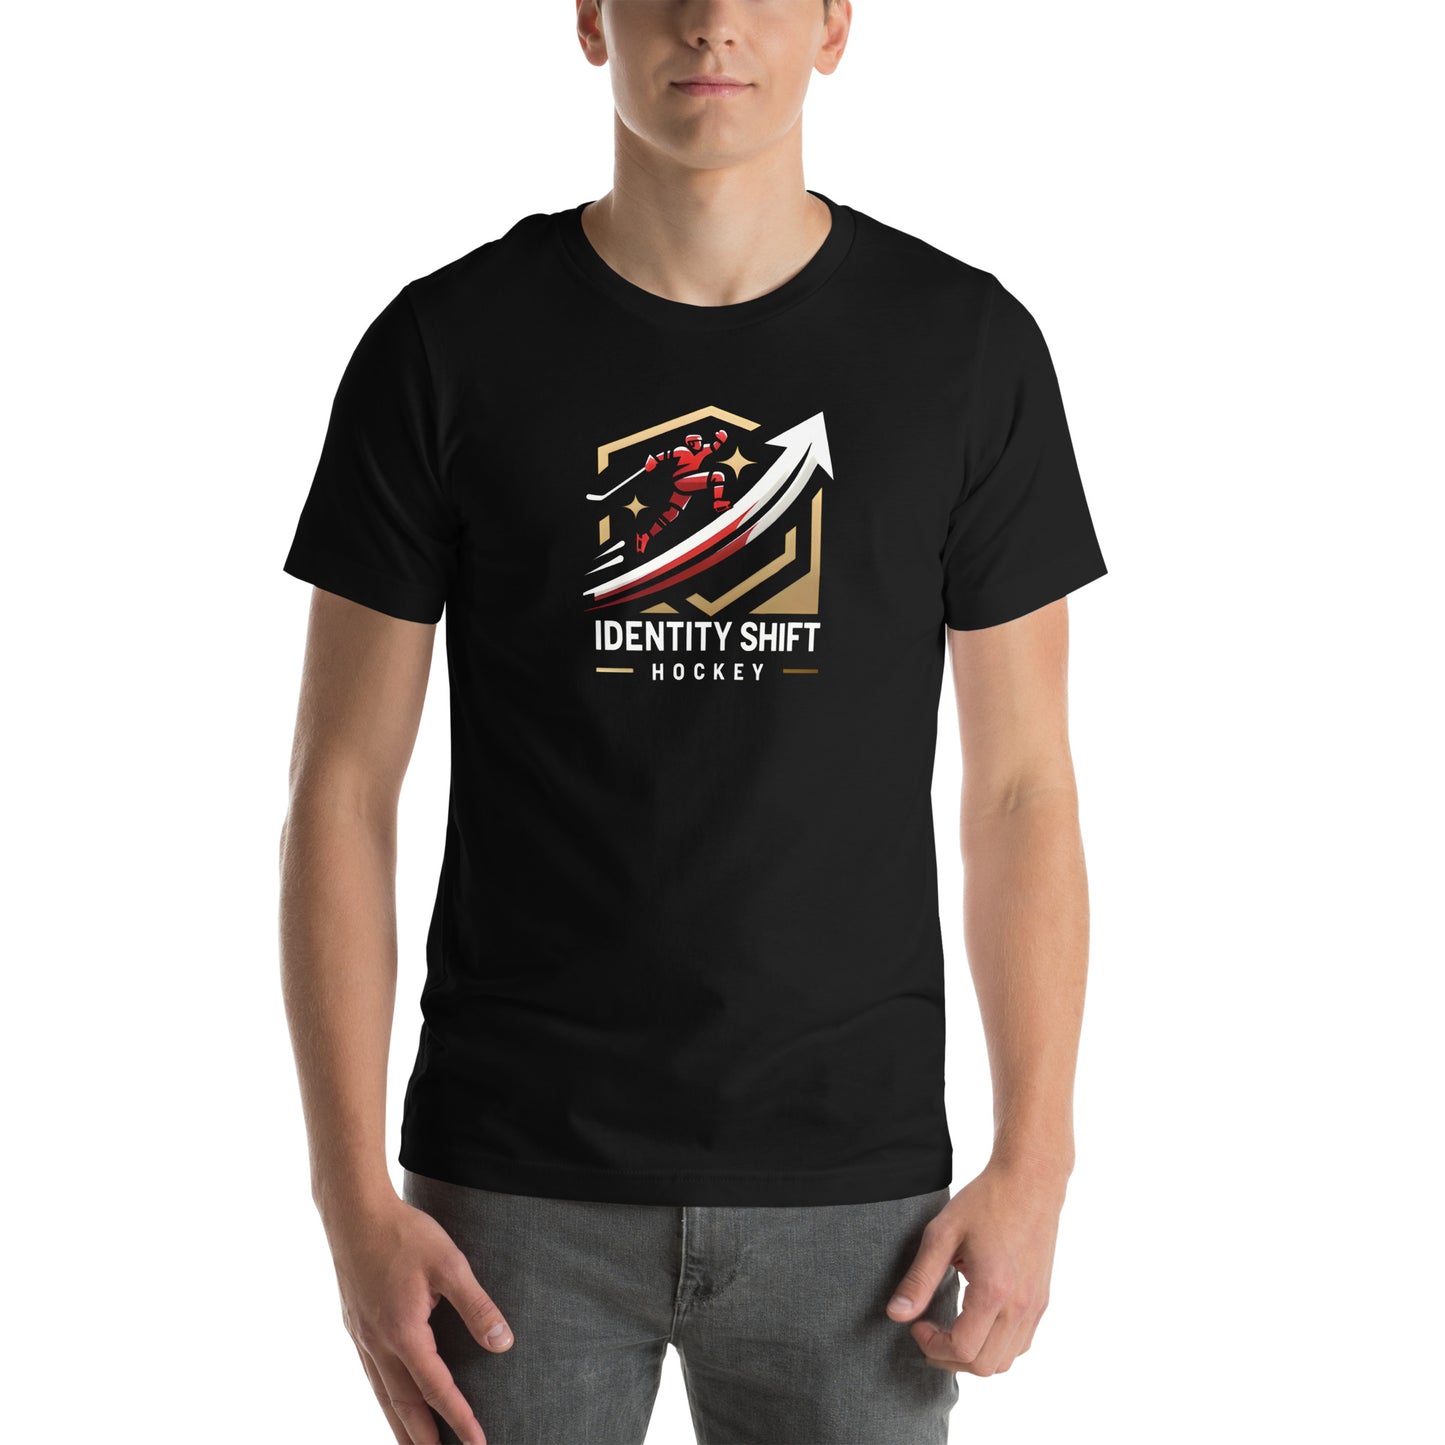 Identity Shift Hockey - Unisex T-Shirt